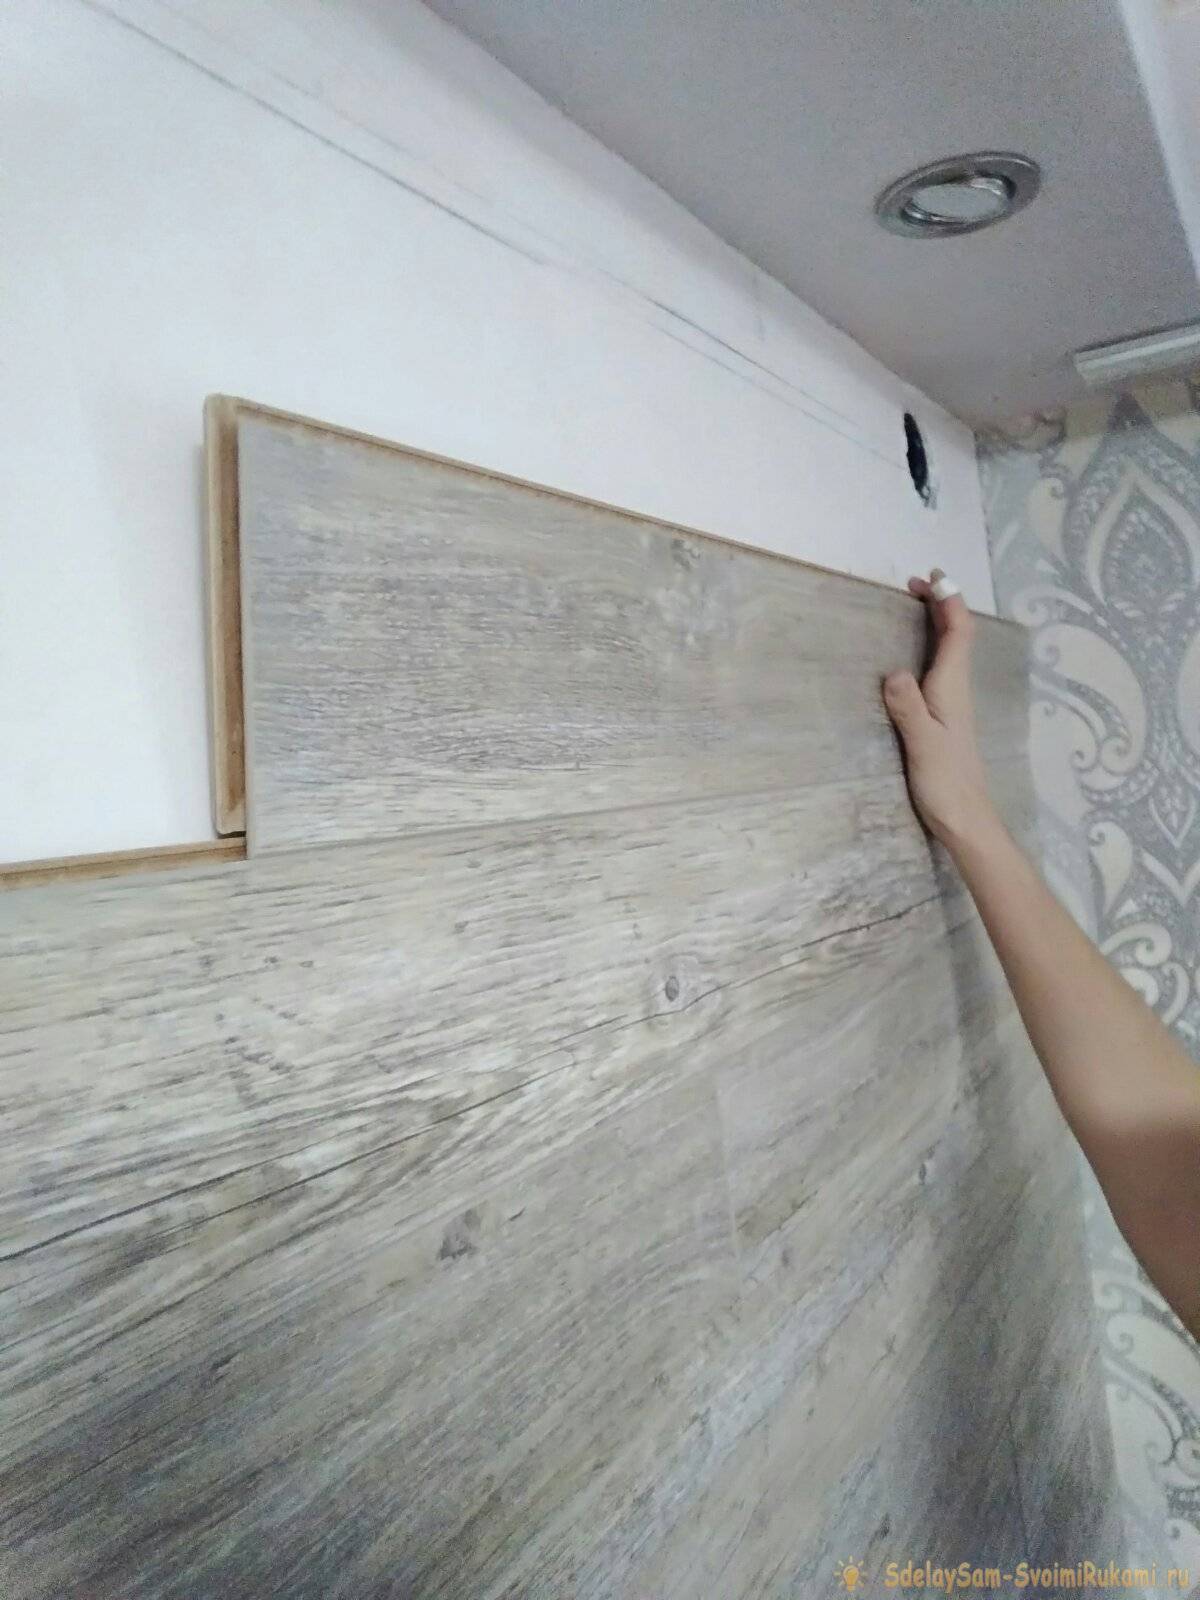 Как крепить ламинат на стену: горизонтально или вертикально, способы с кляймером, обрешеткой и другие